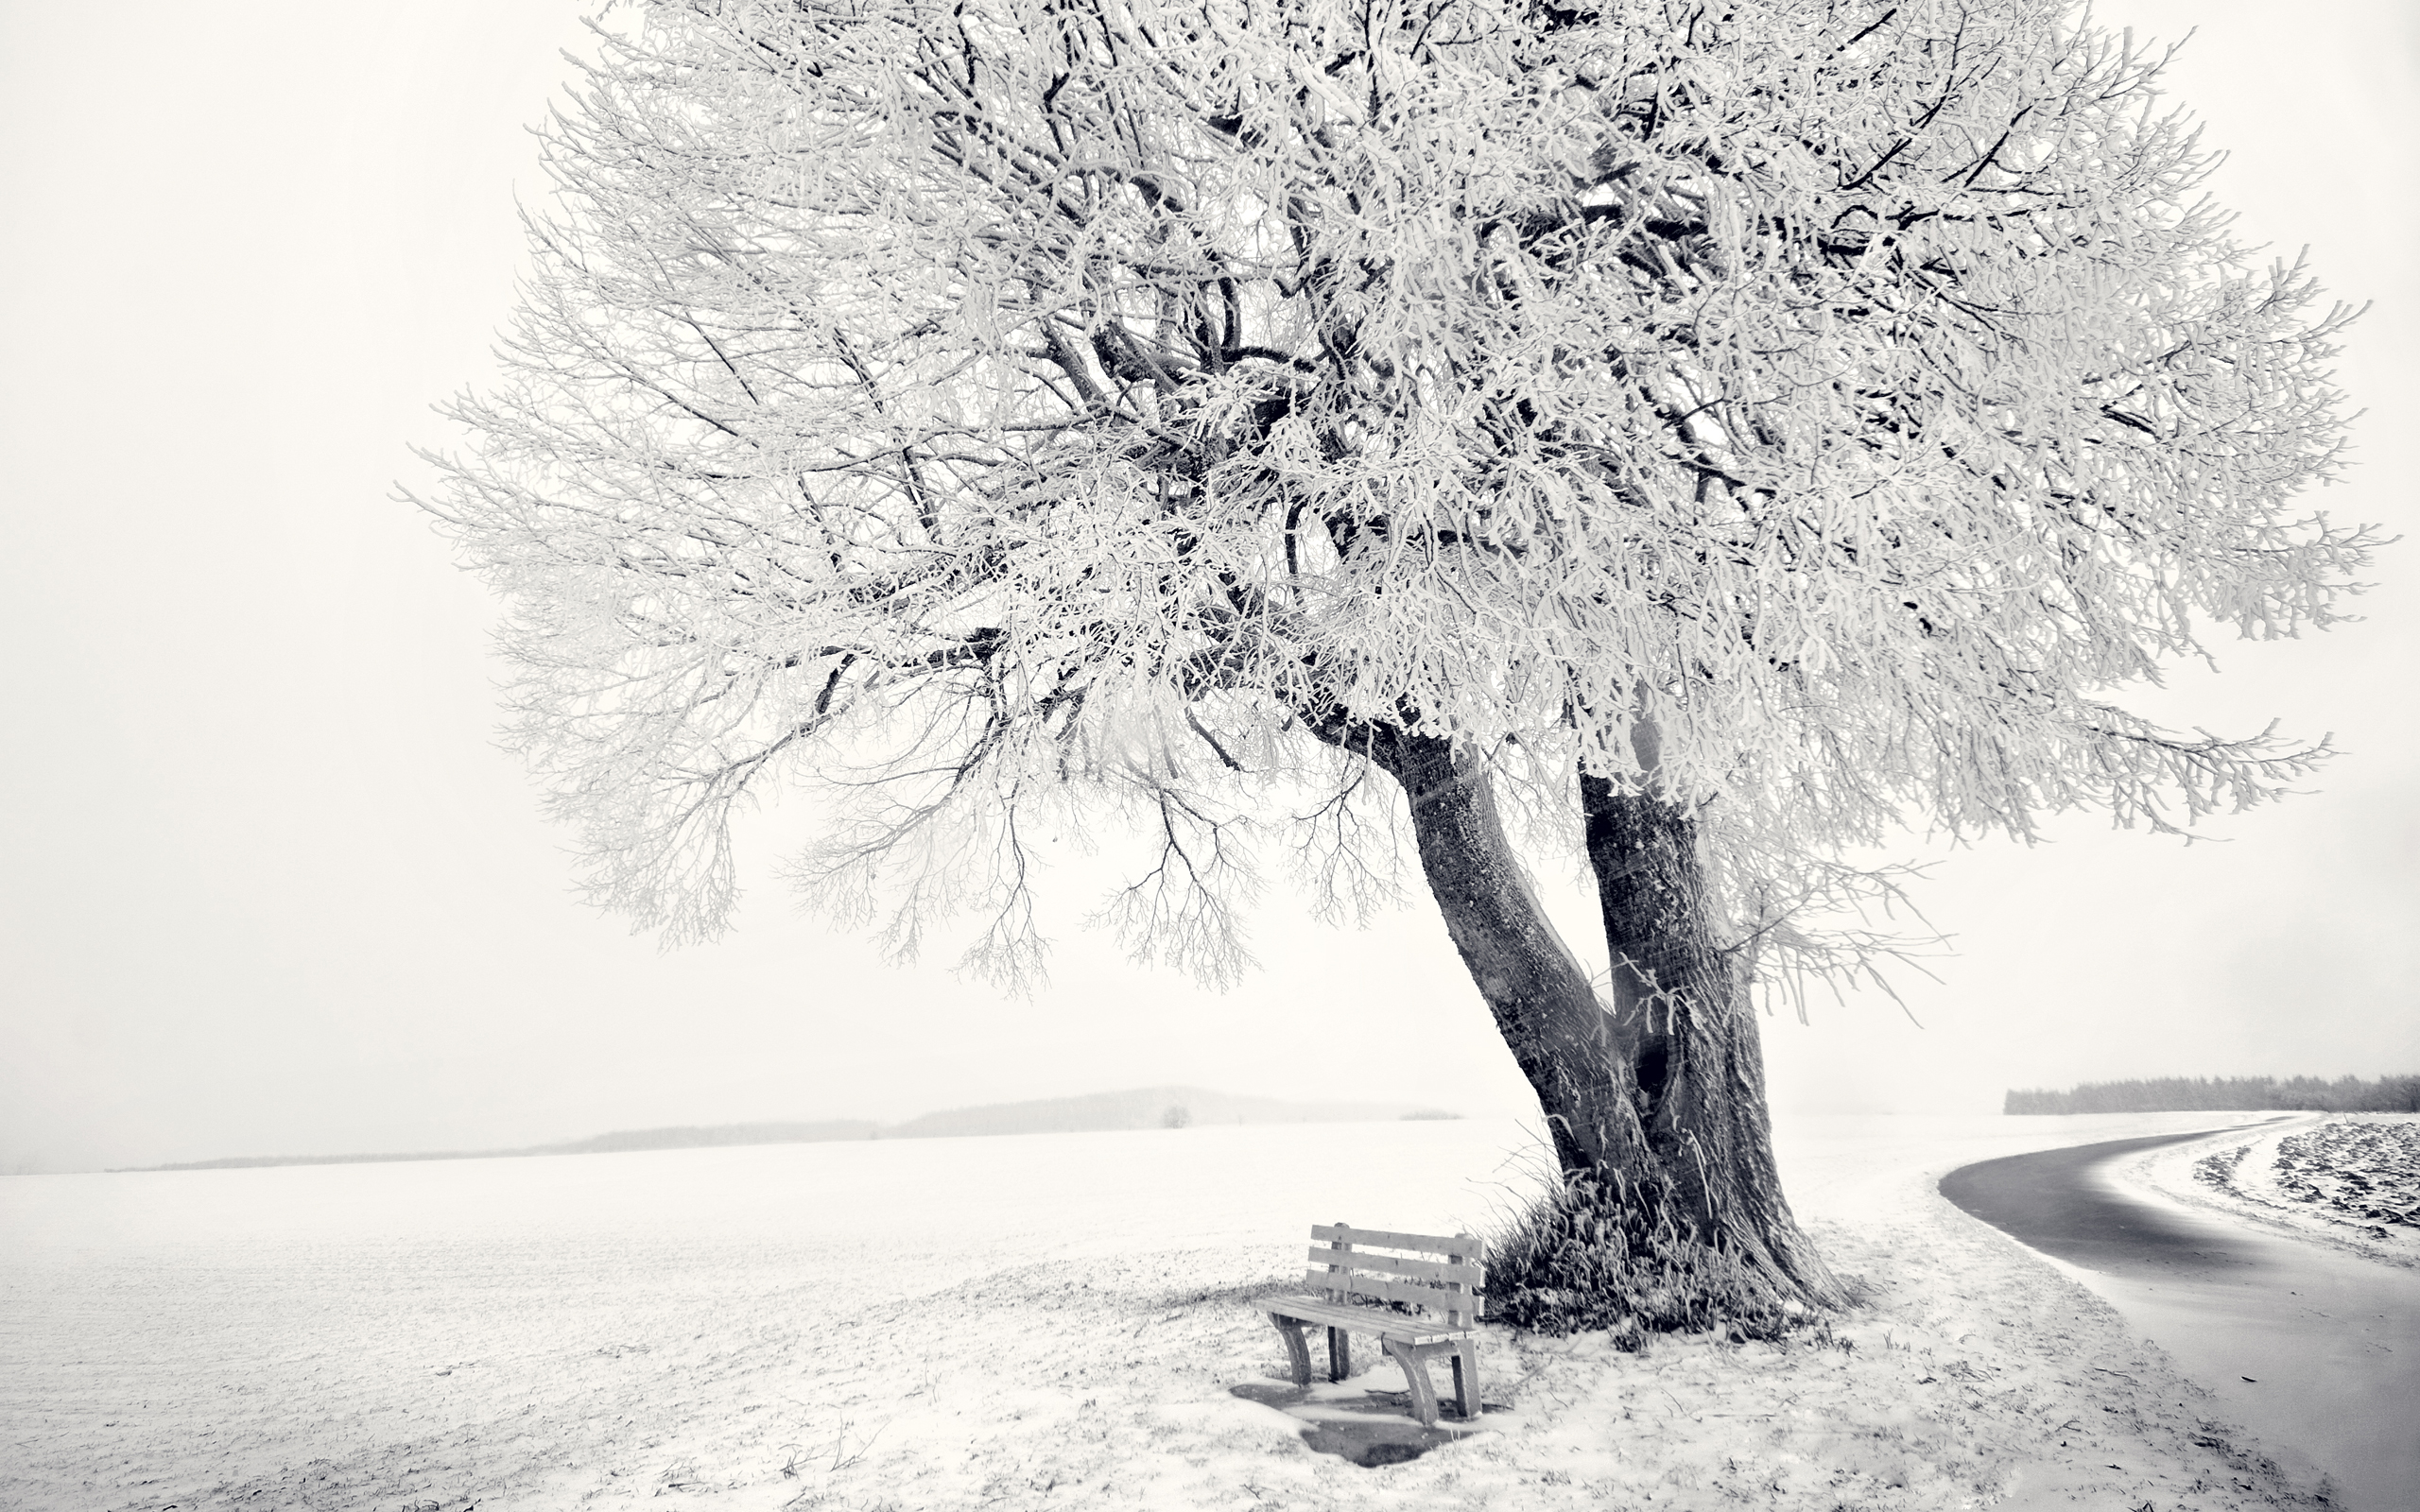 Скачать обои бесплатно Зима, Снег, Дерево, Поле, Скамейка, Ландшафт, Земля/природа картинка на рабочий стол ПК